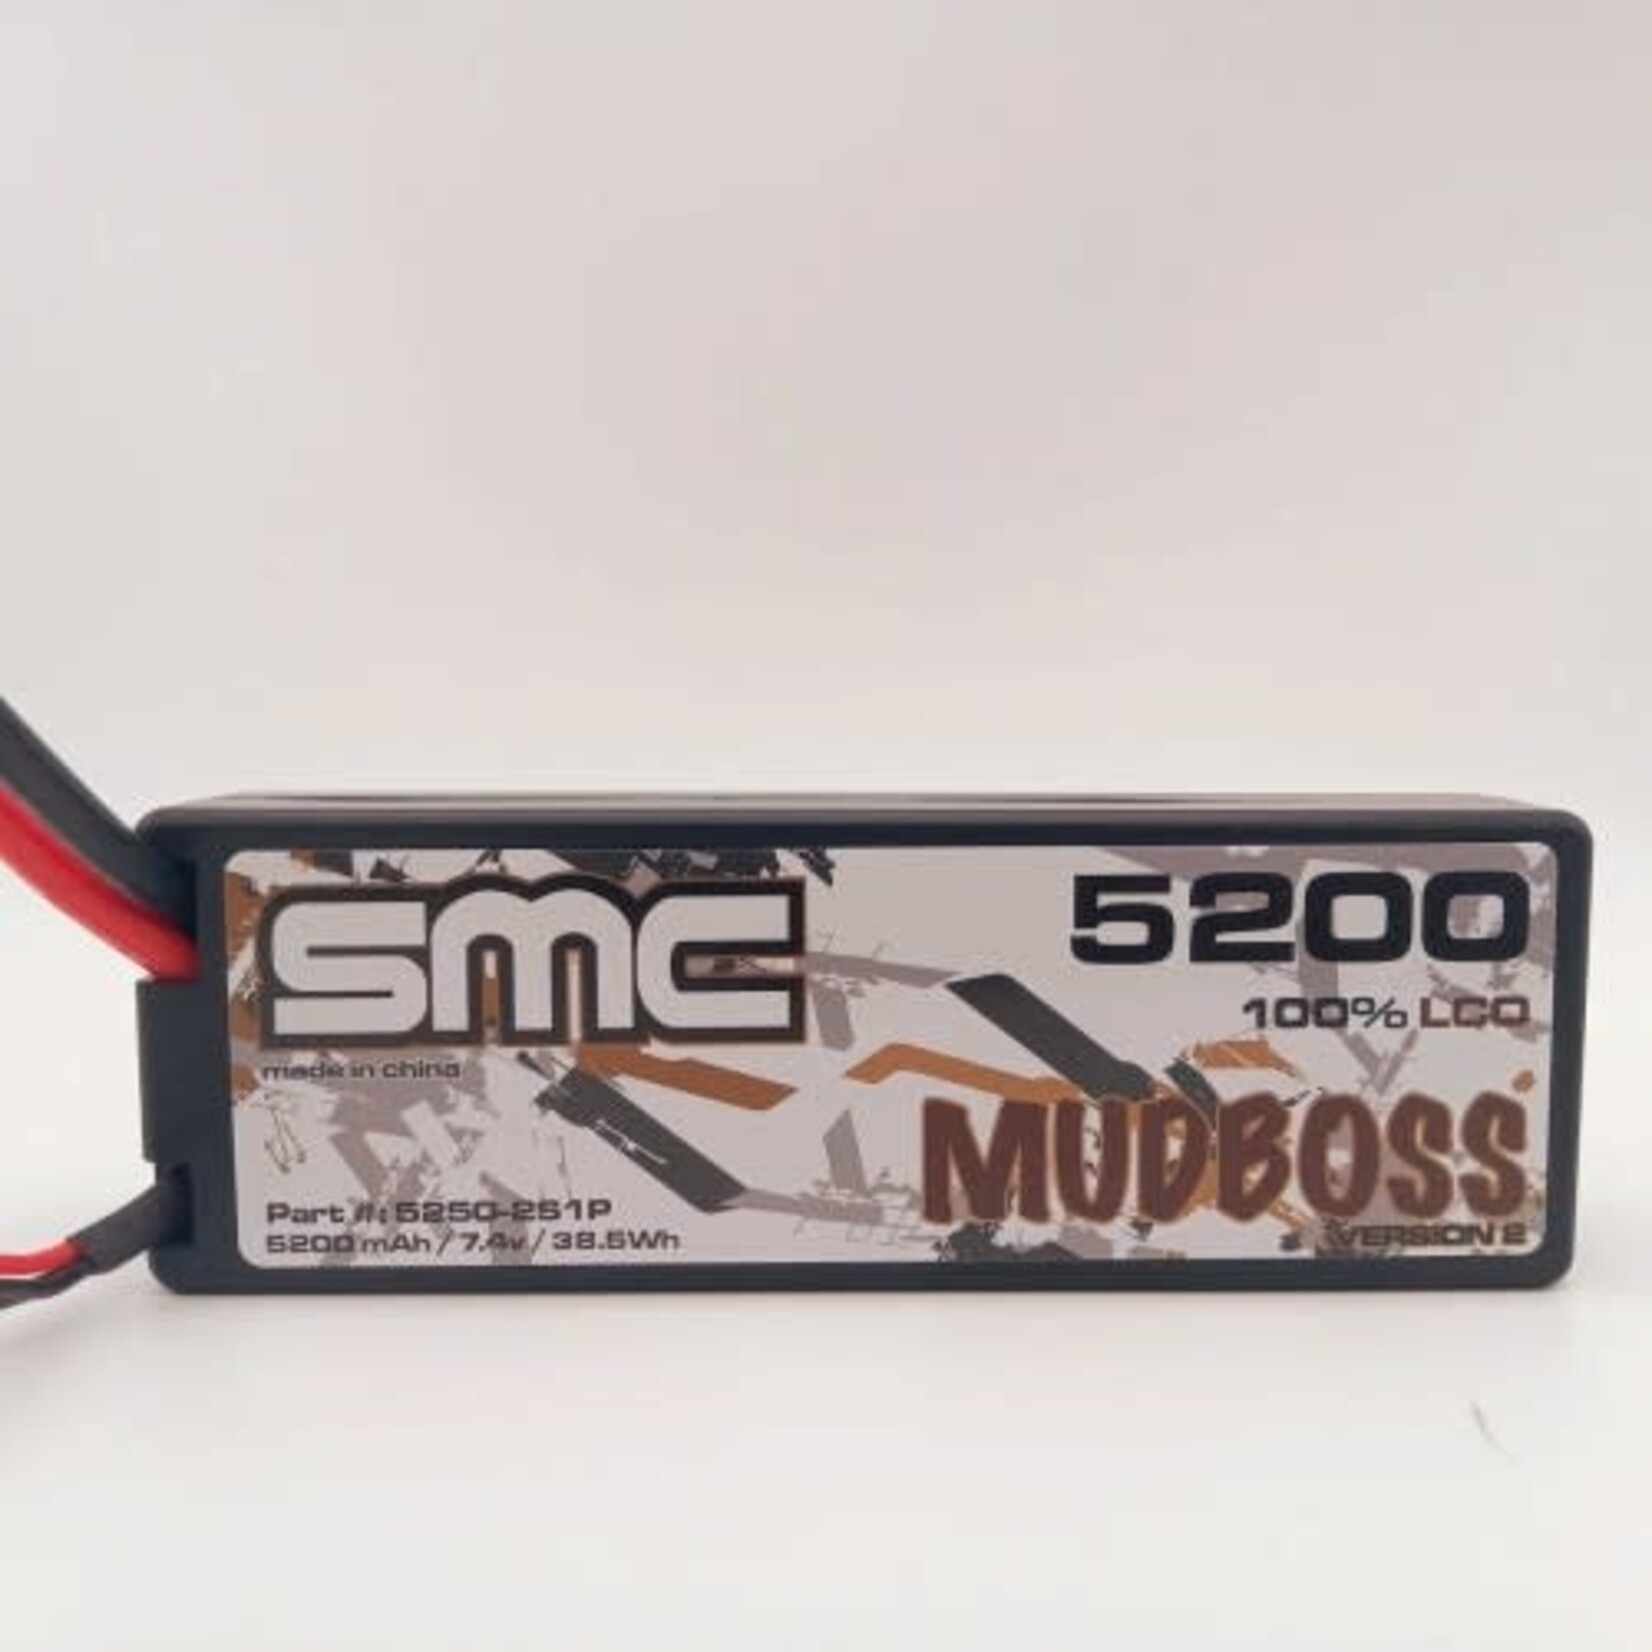 SMC-Racing 7.4 V 5200 Mudboss Pack XT60